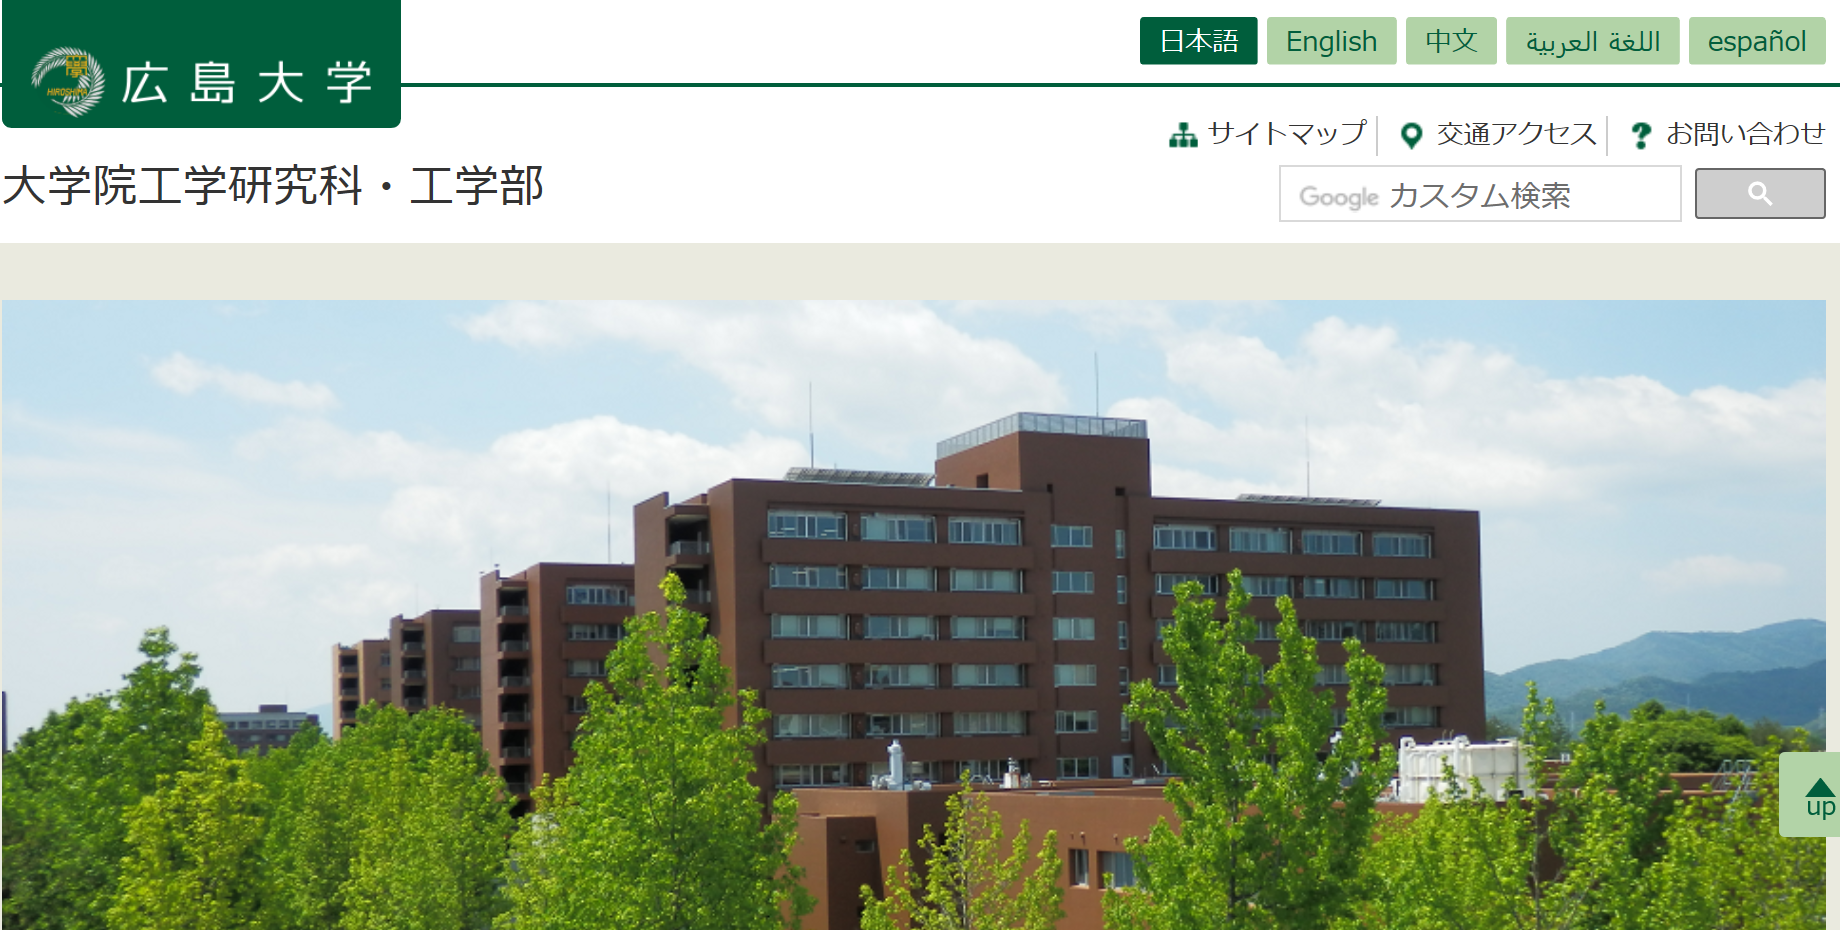 大学 法学部 広島